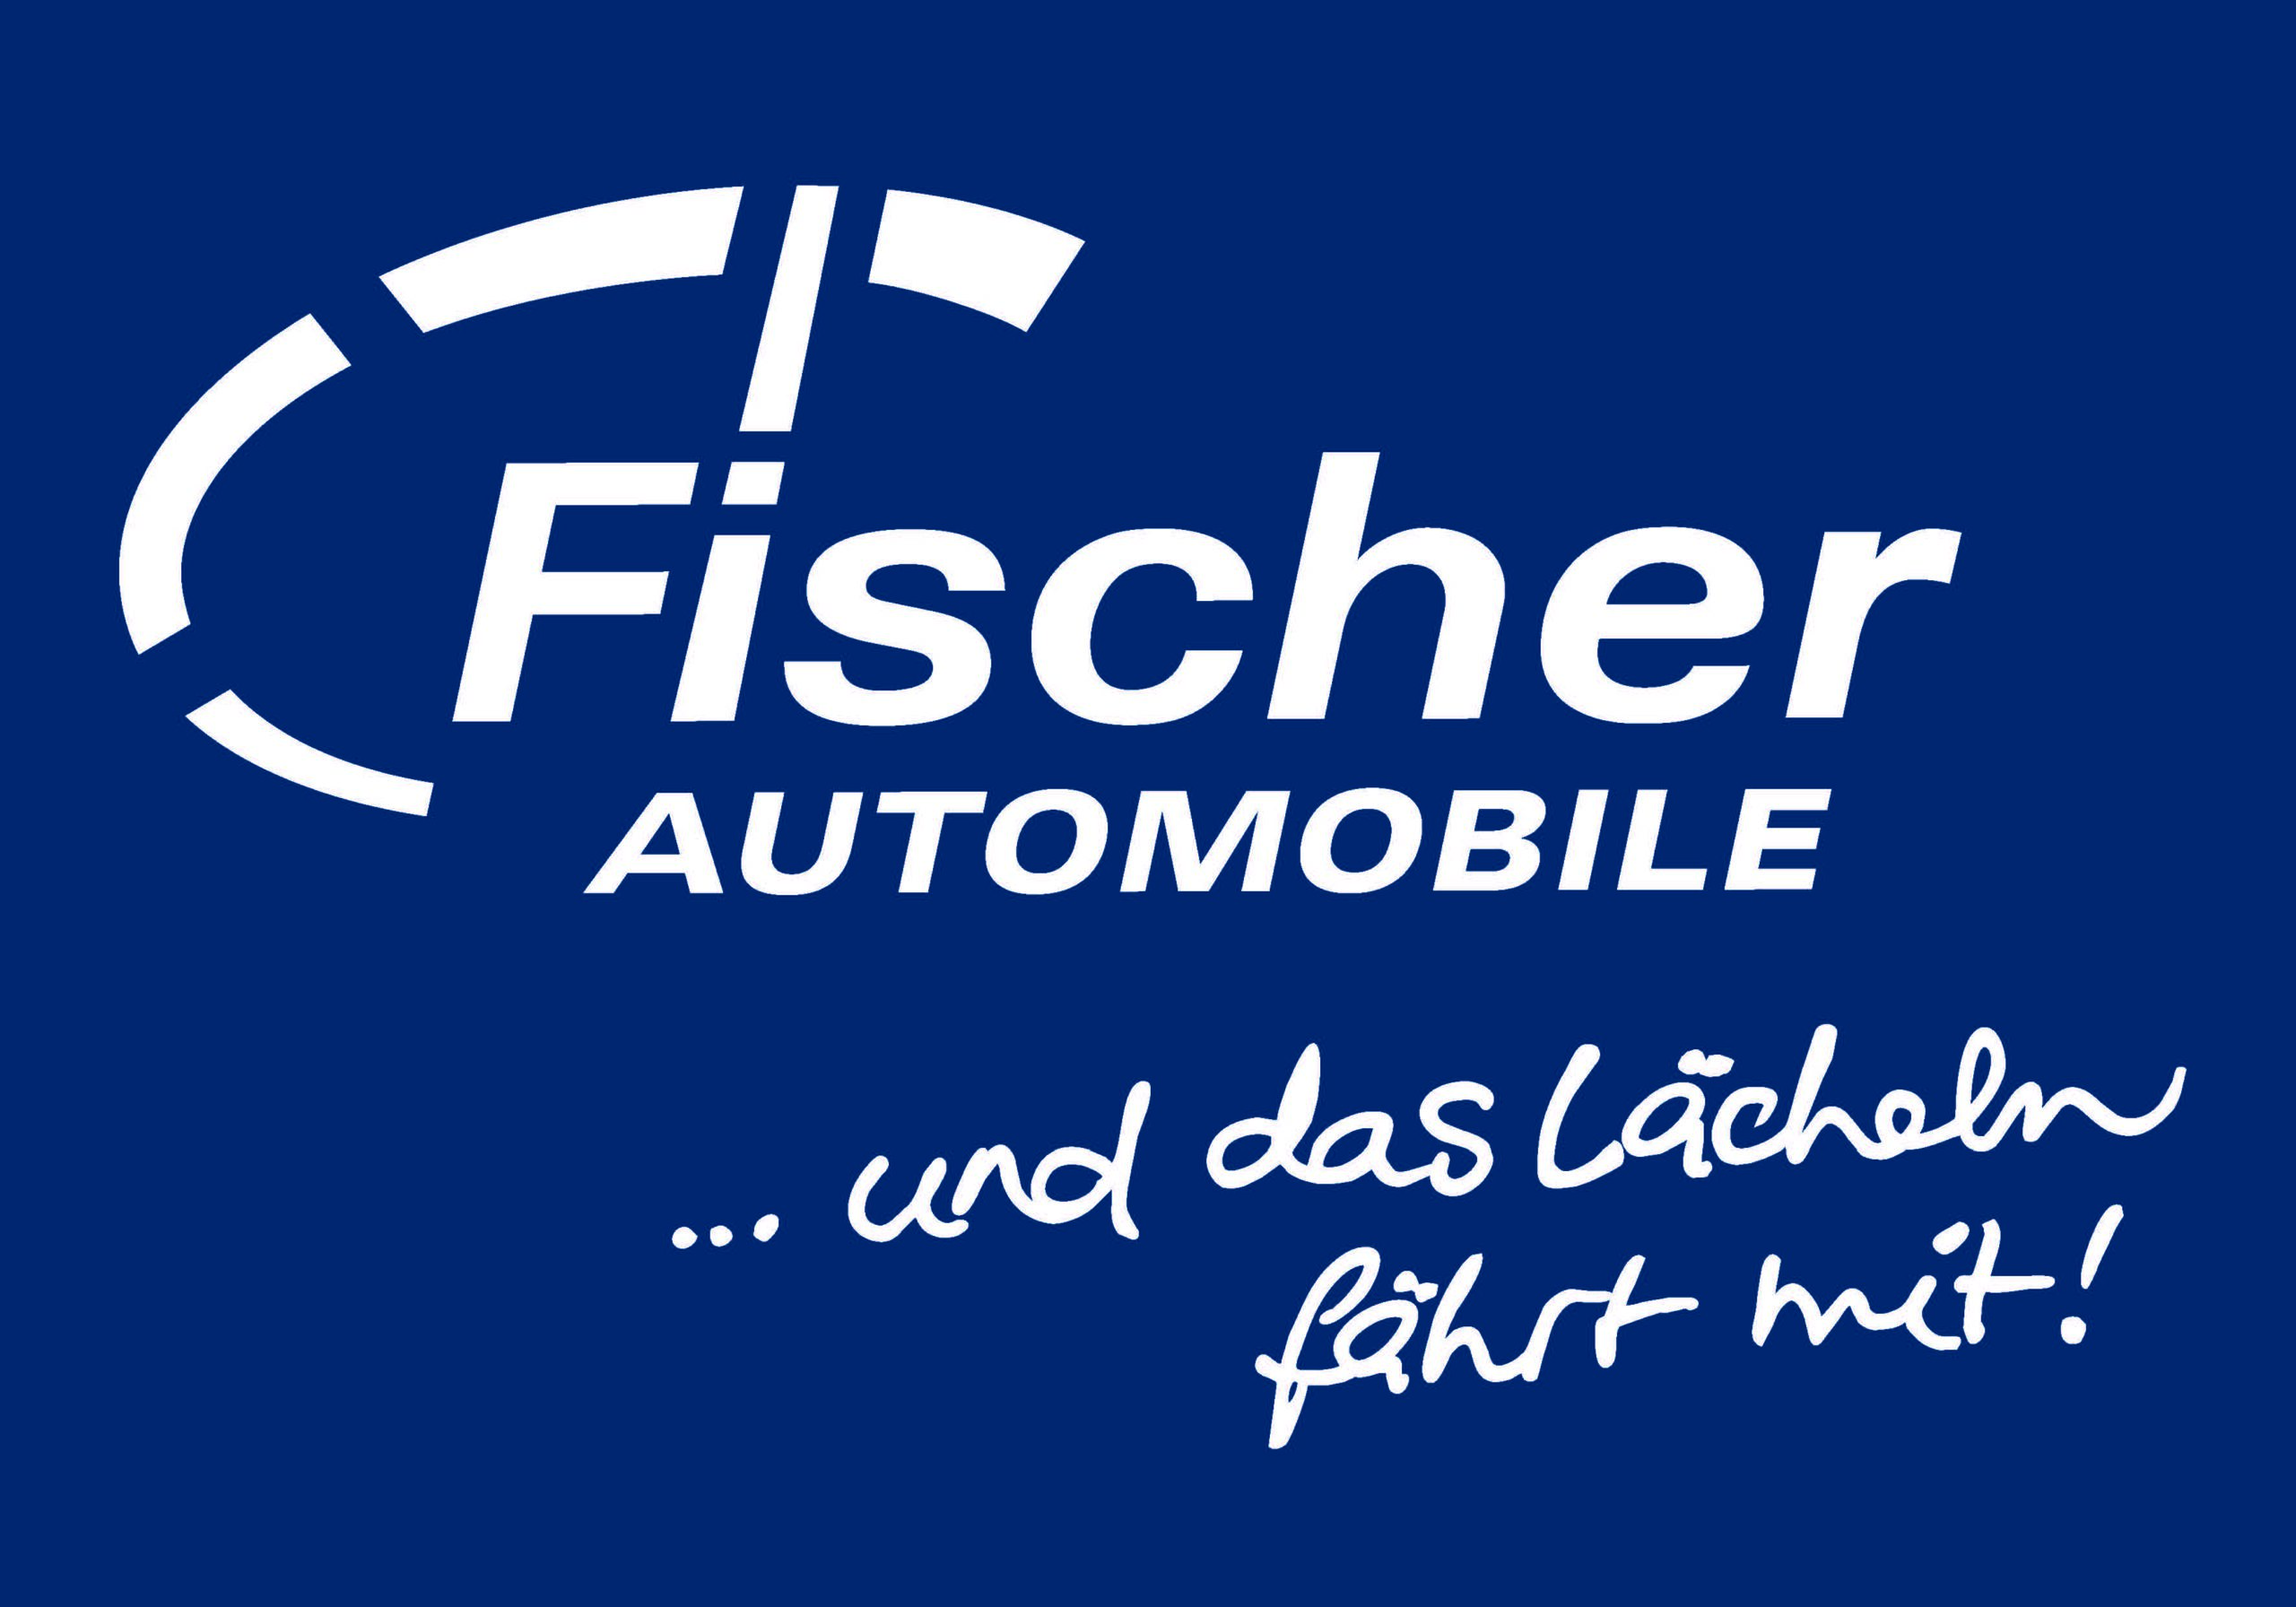 Fischer Automobile